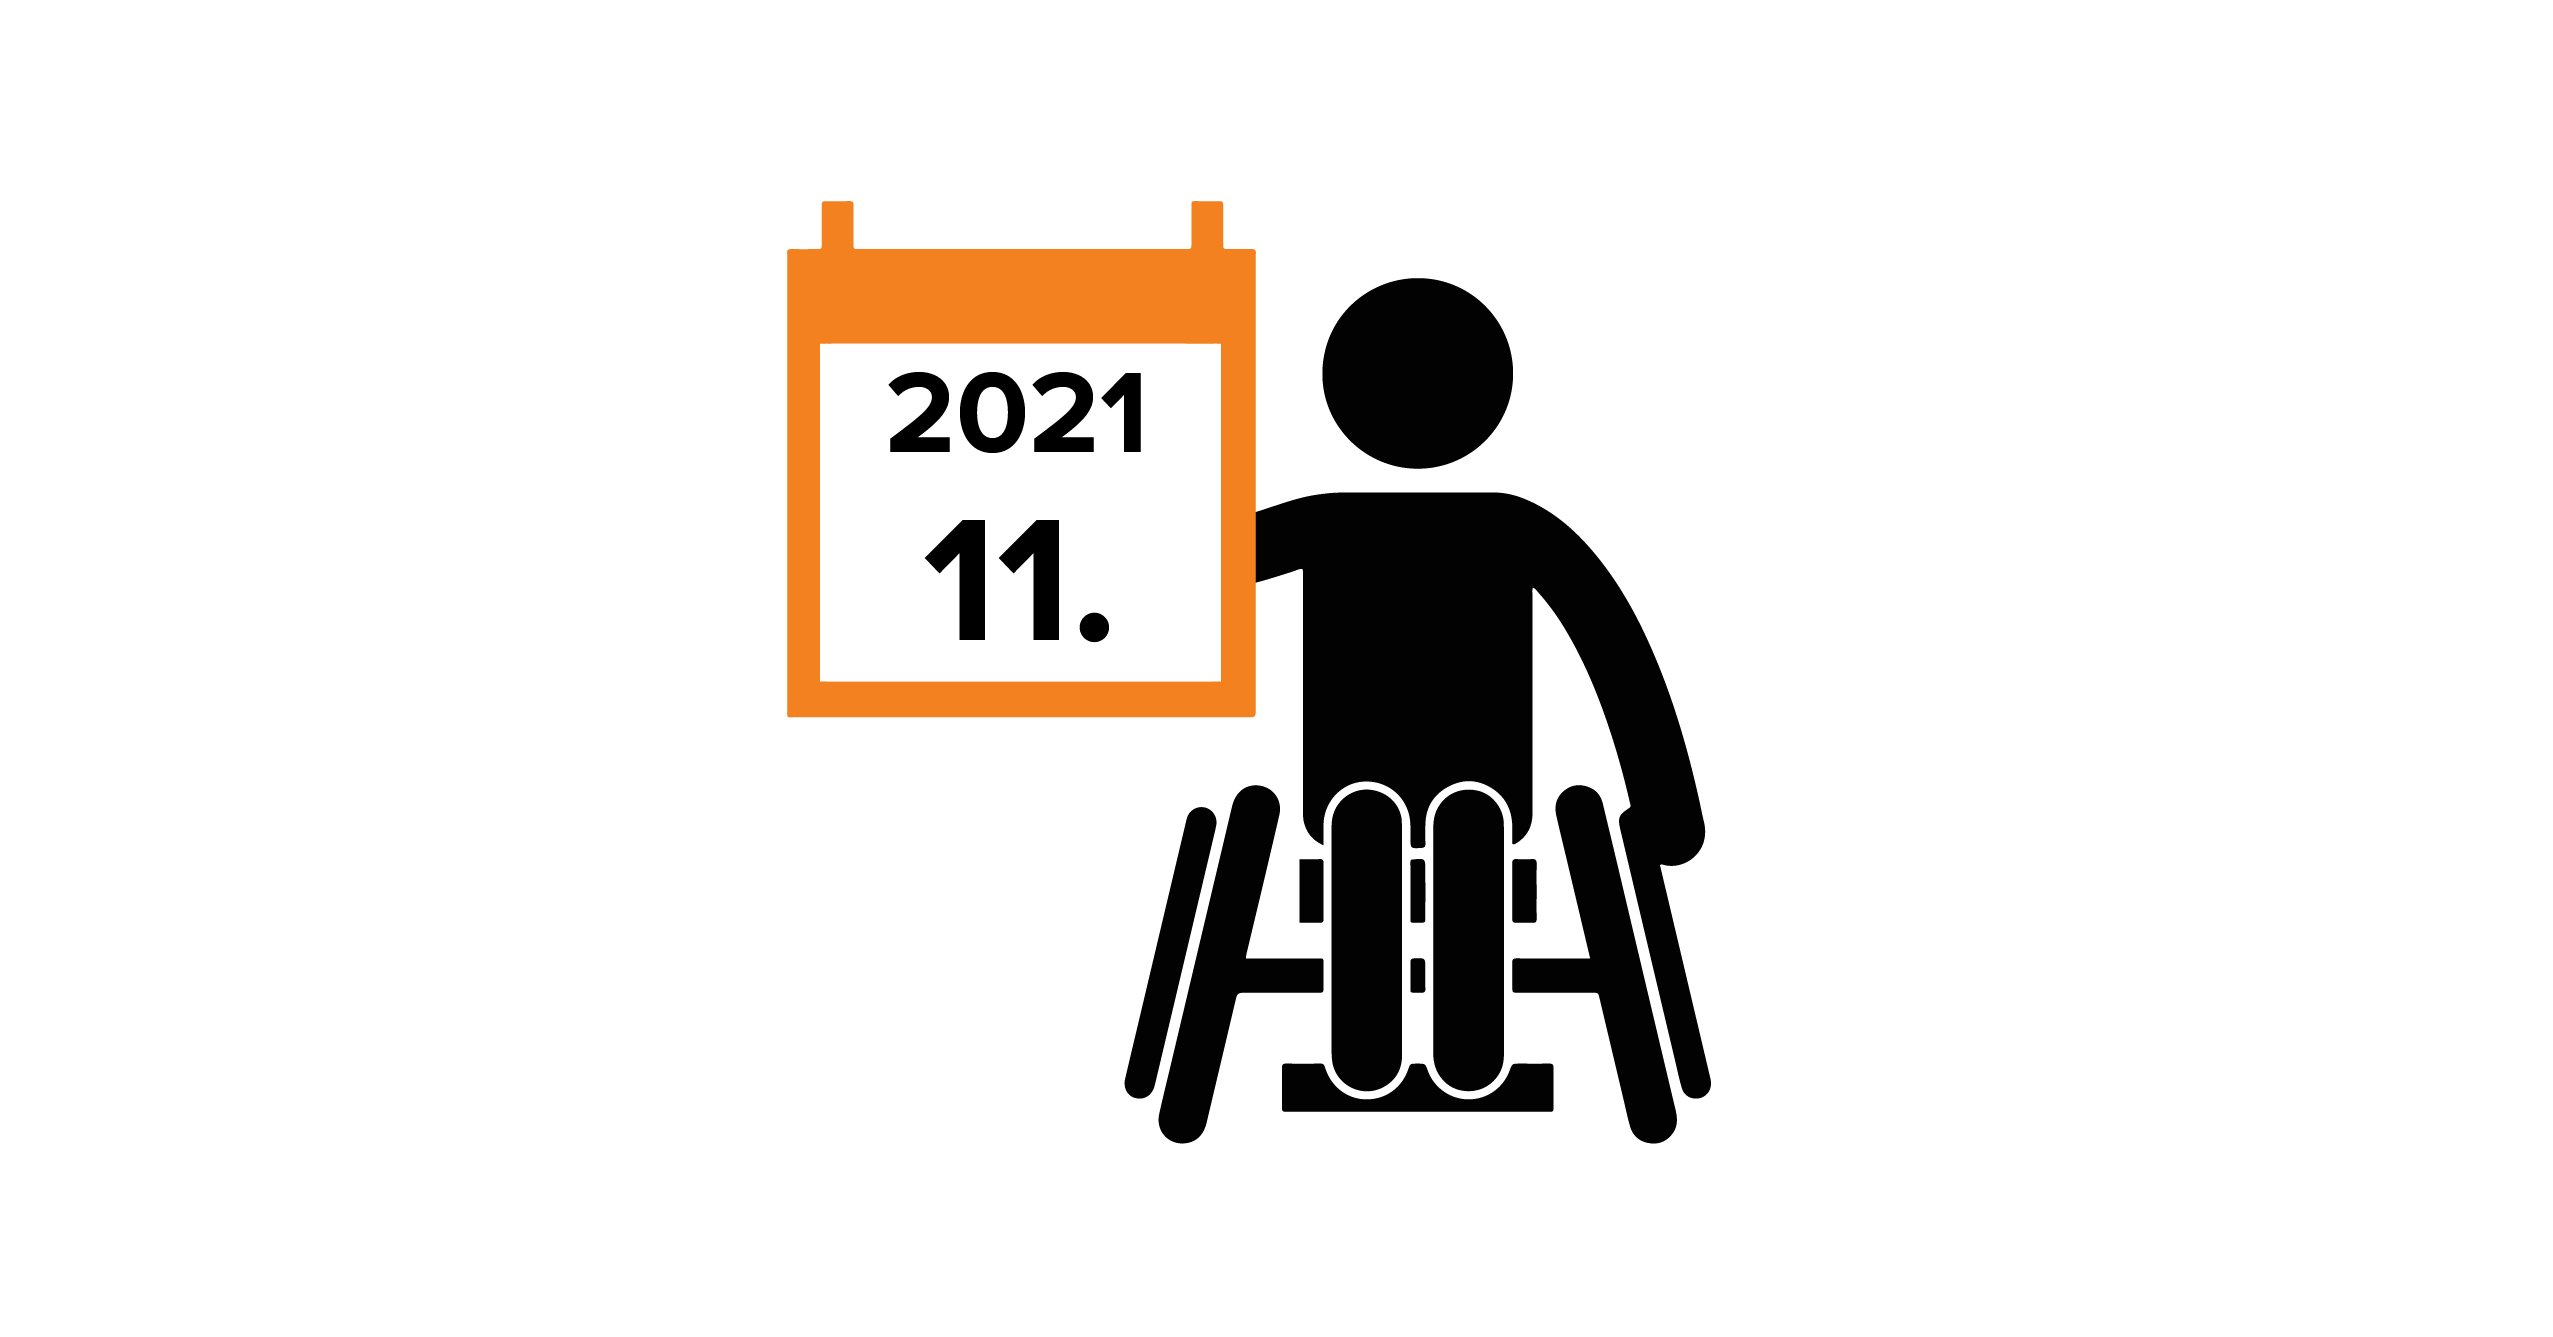 Na grafice człowiek na wózku trzymający w dłoni kalendarz z datą 11.2021.